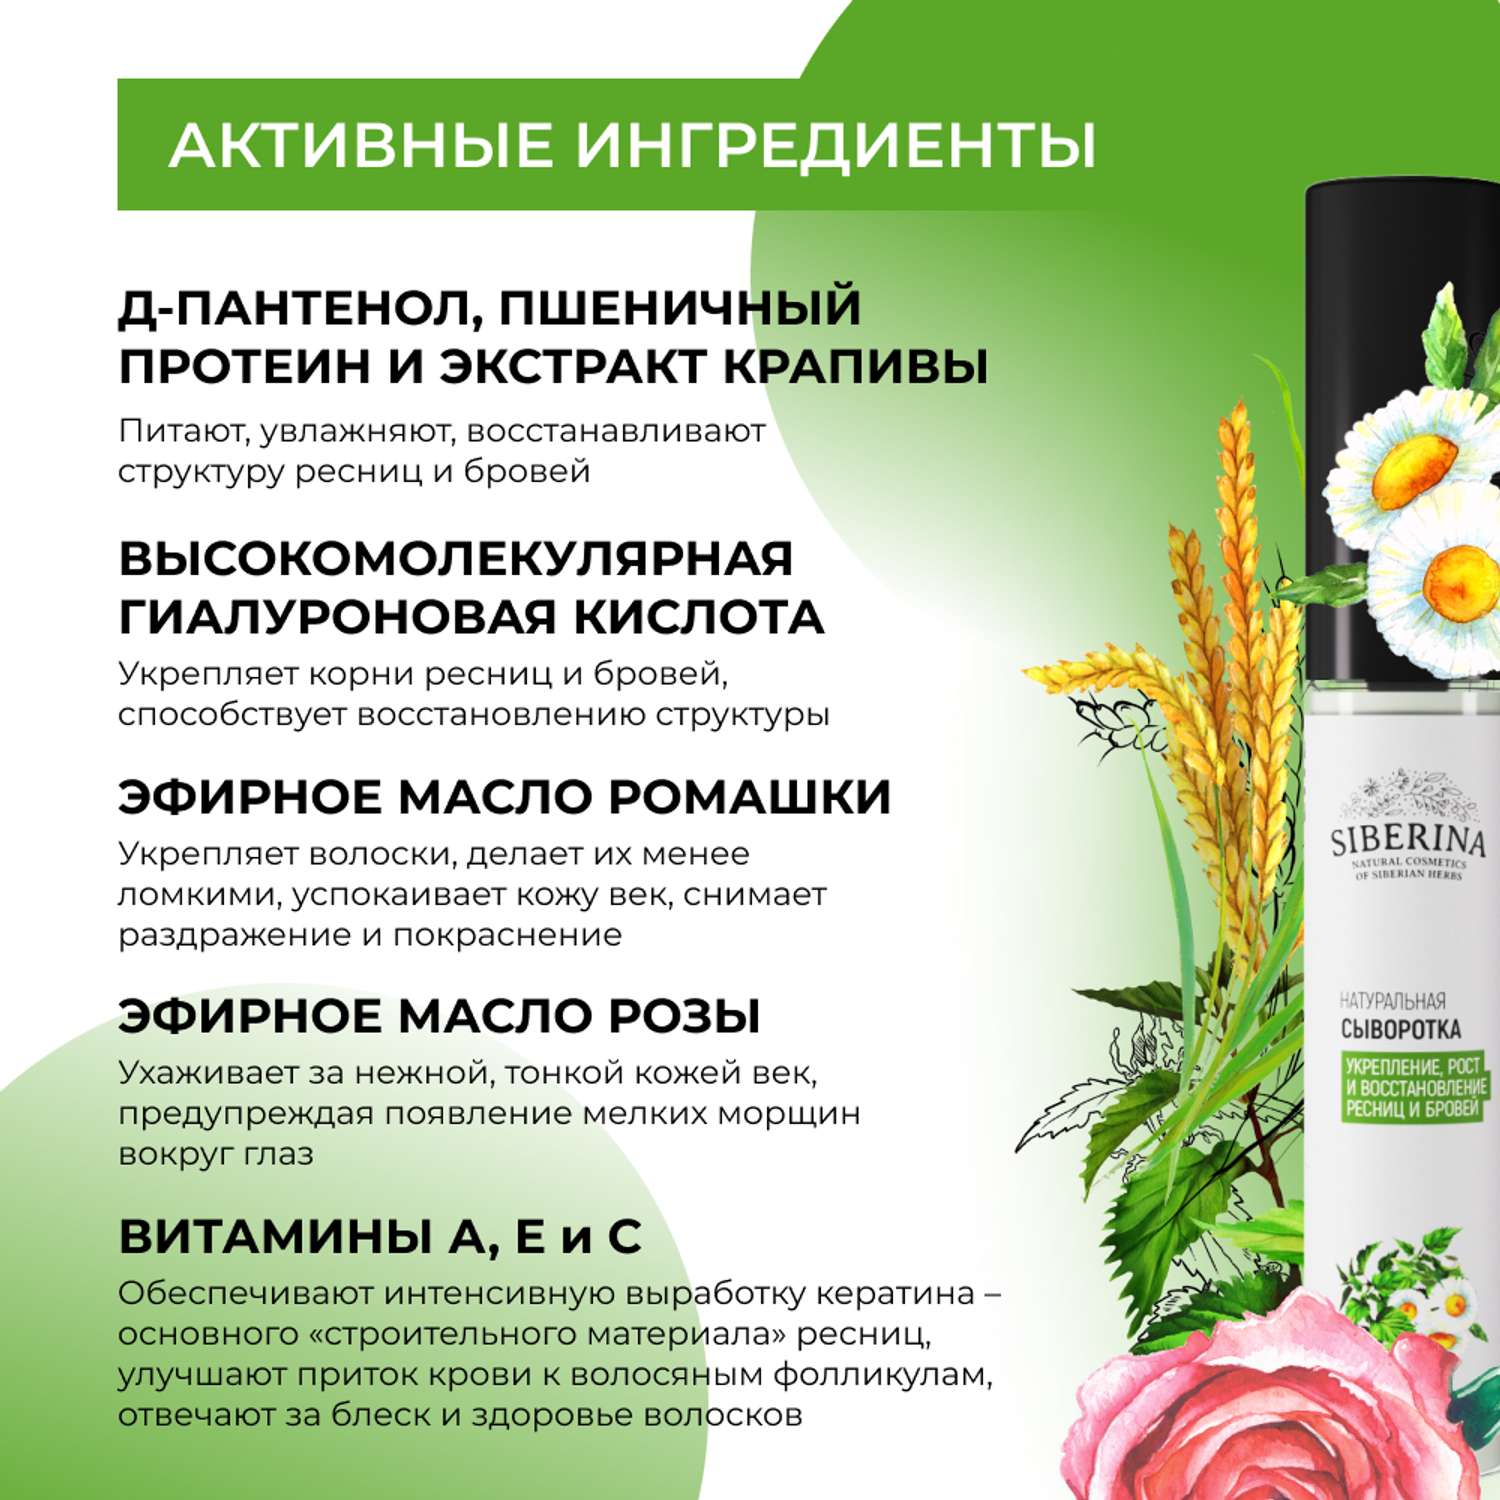 Сыворотка Siberina натуральная «Укрепление рост и восстановление» для ресниц и бровей 10 мл - фото 4